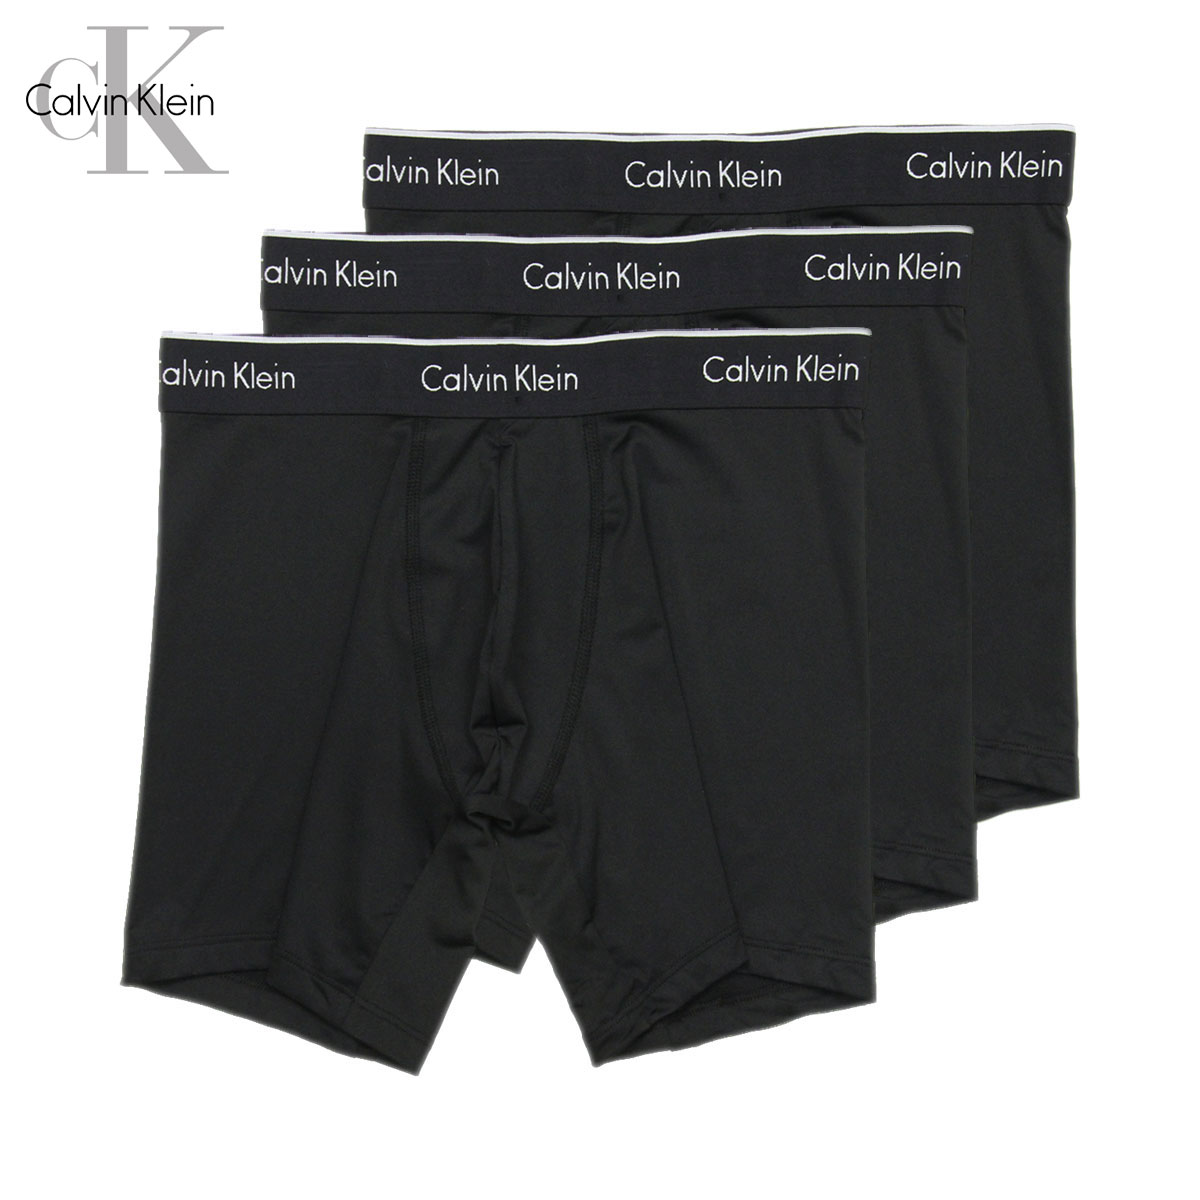 カルバン・クライン カルバンクライン ボクサーブリーフ メンズ 正規品 Calvin Klein アンダーウェア ボクサーブリーフ 下着 3枚セット マクロファイバー 3PACK MICROFIBER BOXER BRIEFS 父の日 プレゼント ラッピング